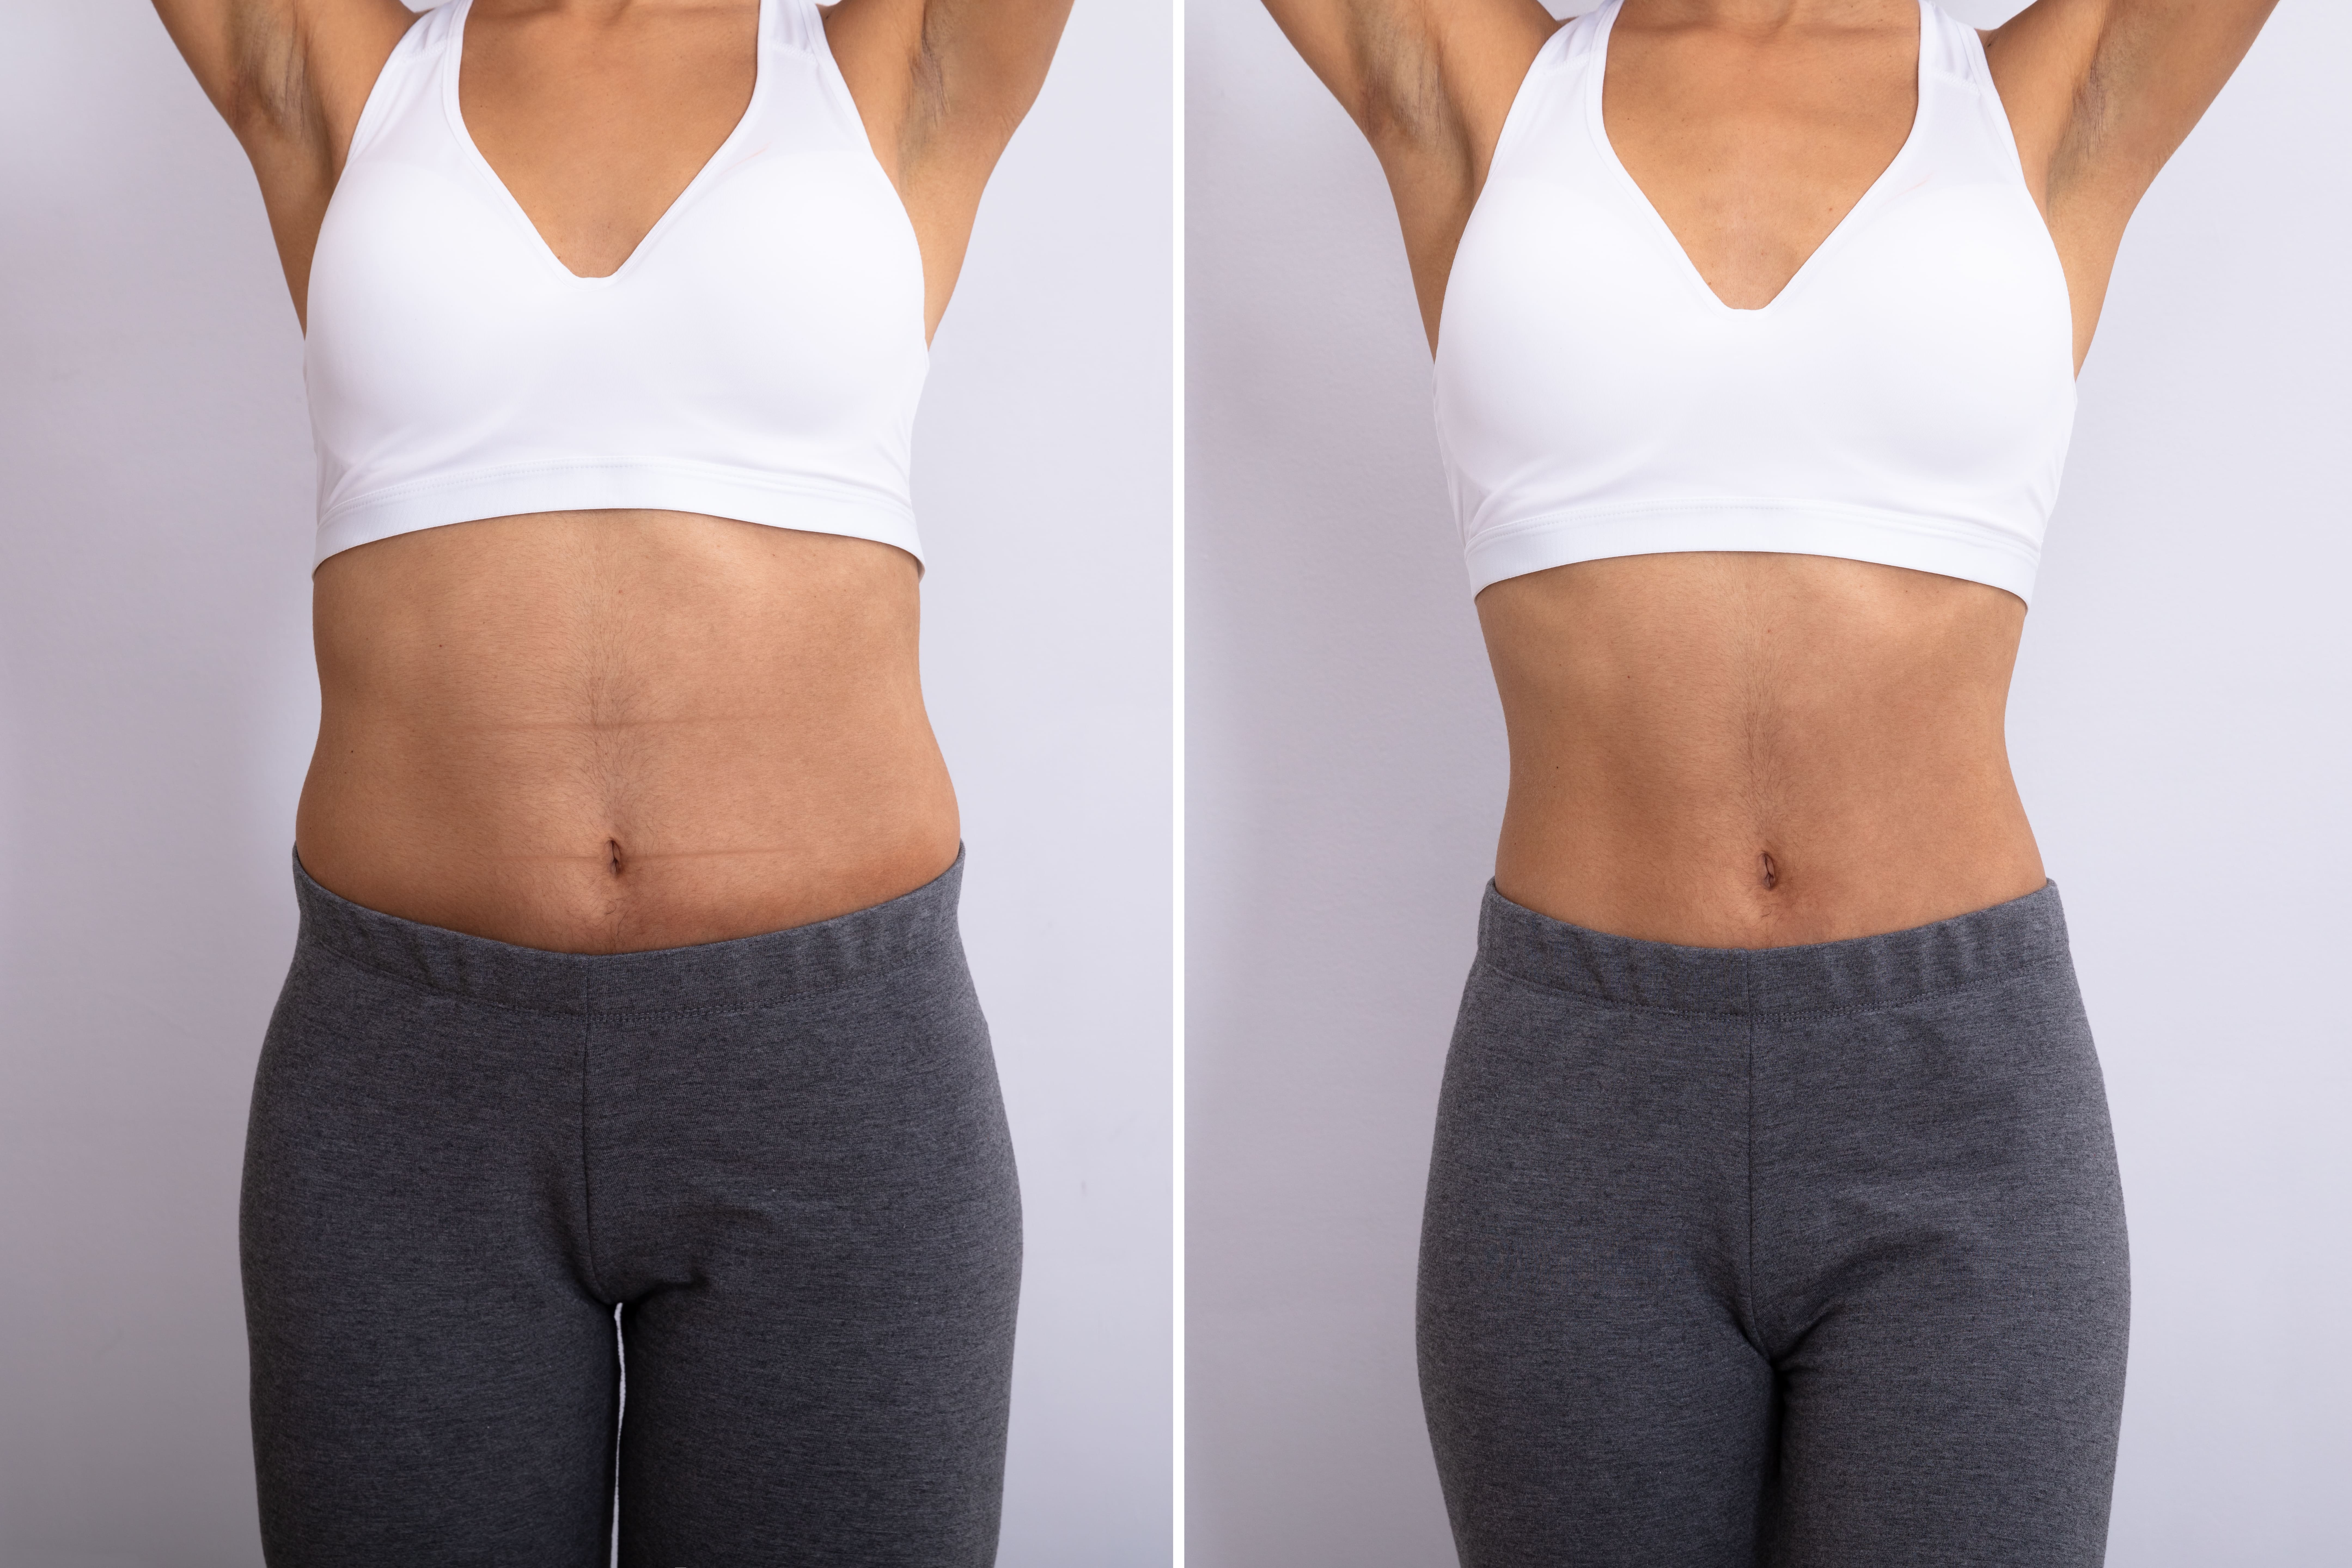 下圖為腹部環抽效果，左邊為抽脂前，右邊為抽脂後，明顯看出腰身，讓身型比例在視覺上更為修長。